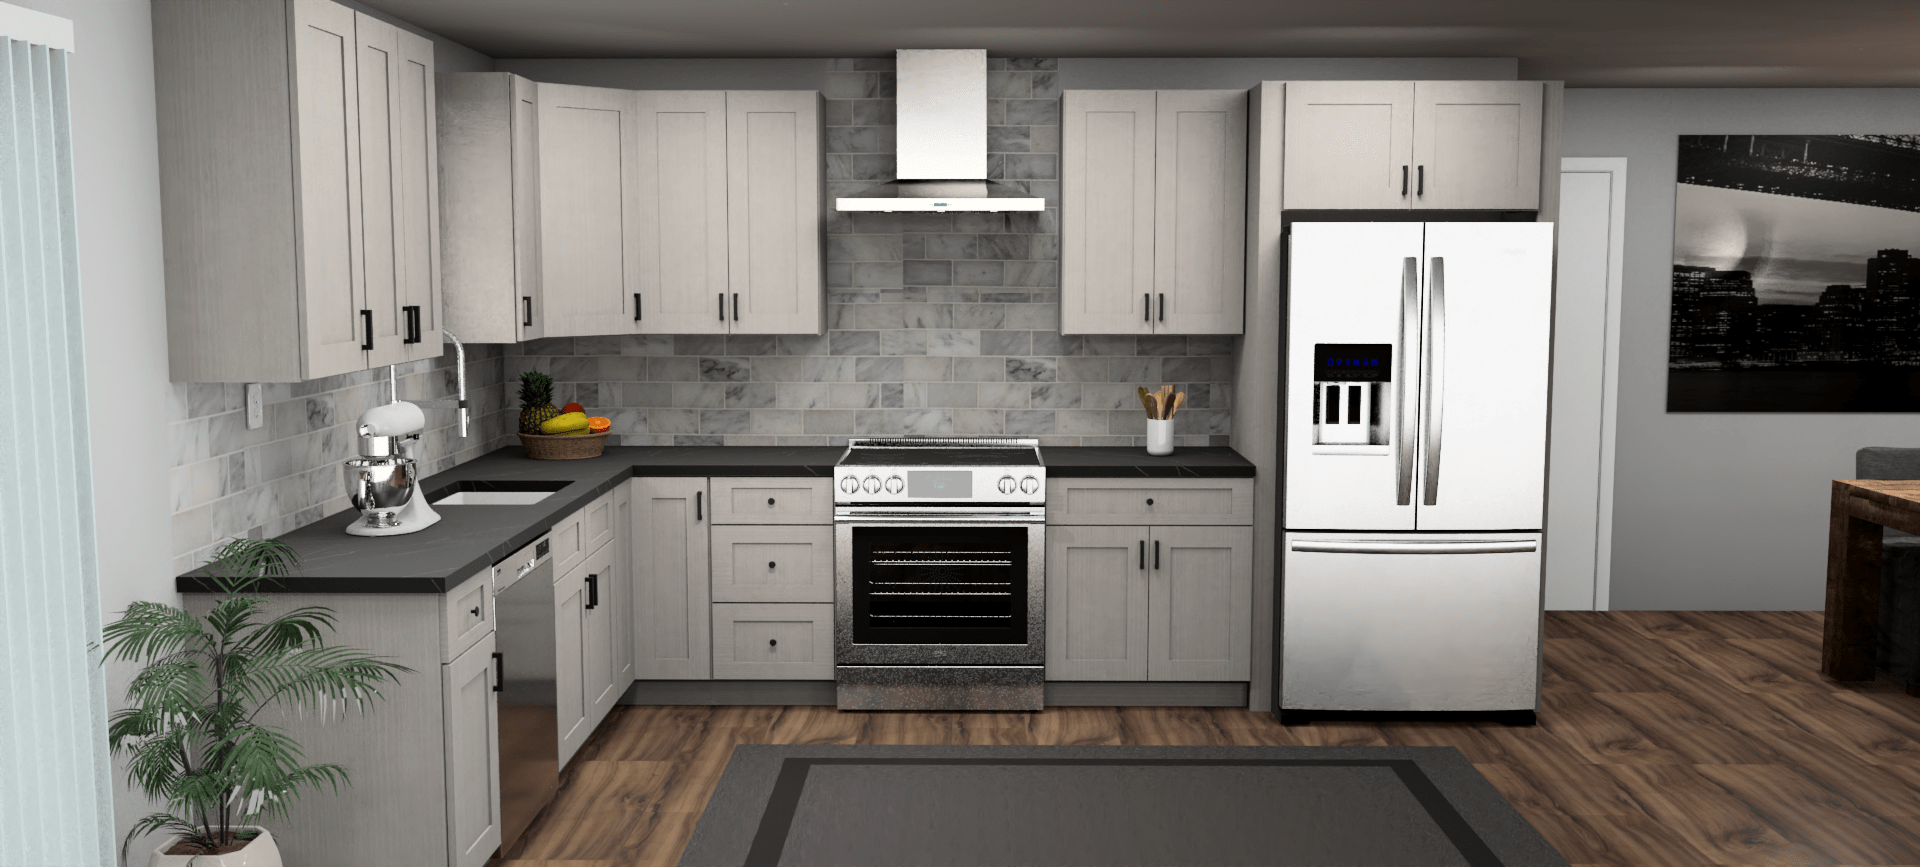 Fabuwood Allure Galaxy Horizon 9 x 13 L Shaped Kitchen Front Layout Photo